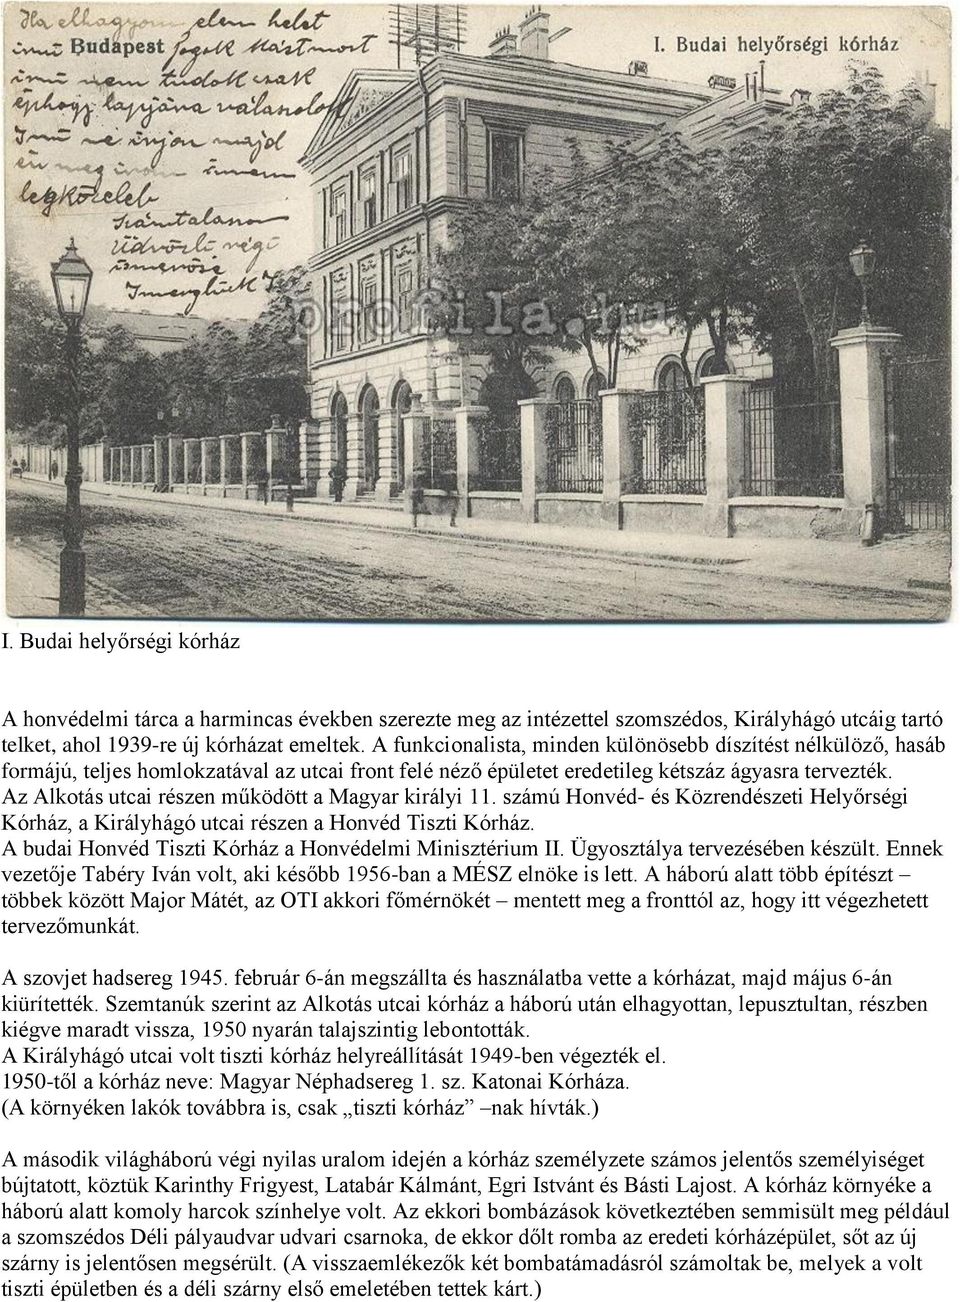 Az Alkotás utcai részen működött a Magyar királyi 11. számú Honvéd- és Közrendészeti Helyőrségi Kórház, a Királyhágó utcai részen a Honvéd Tiszti Kórház.